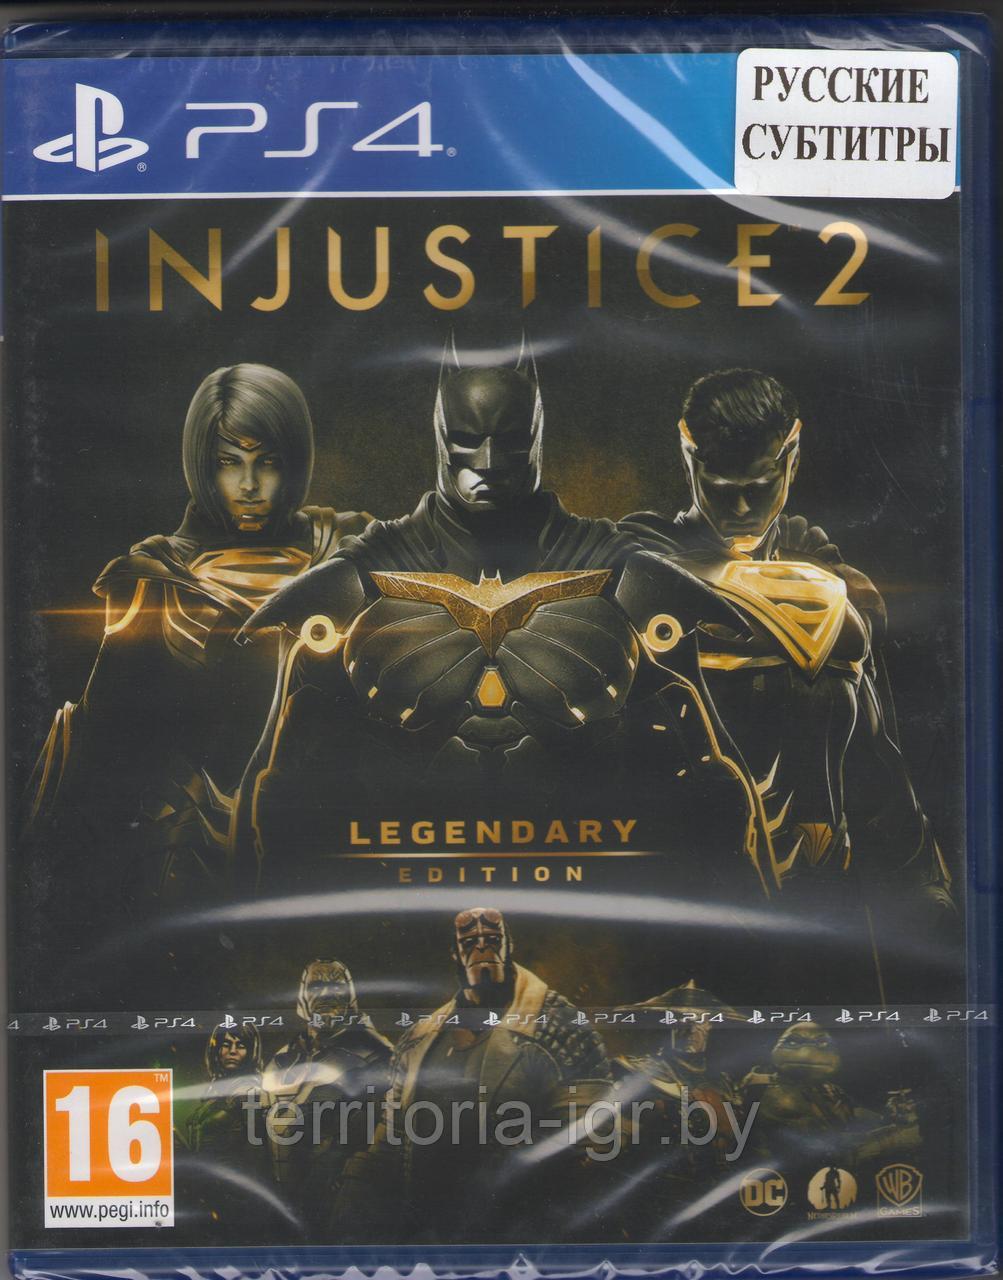 Injustice 2. Legendary Edition PS4/PS5 (Русские субтитры) Европейская обложка.